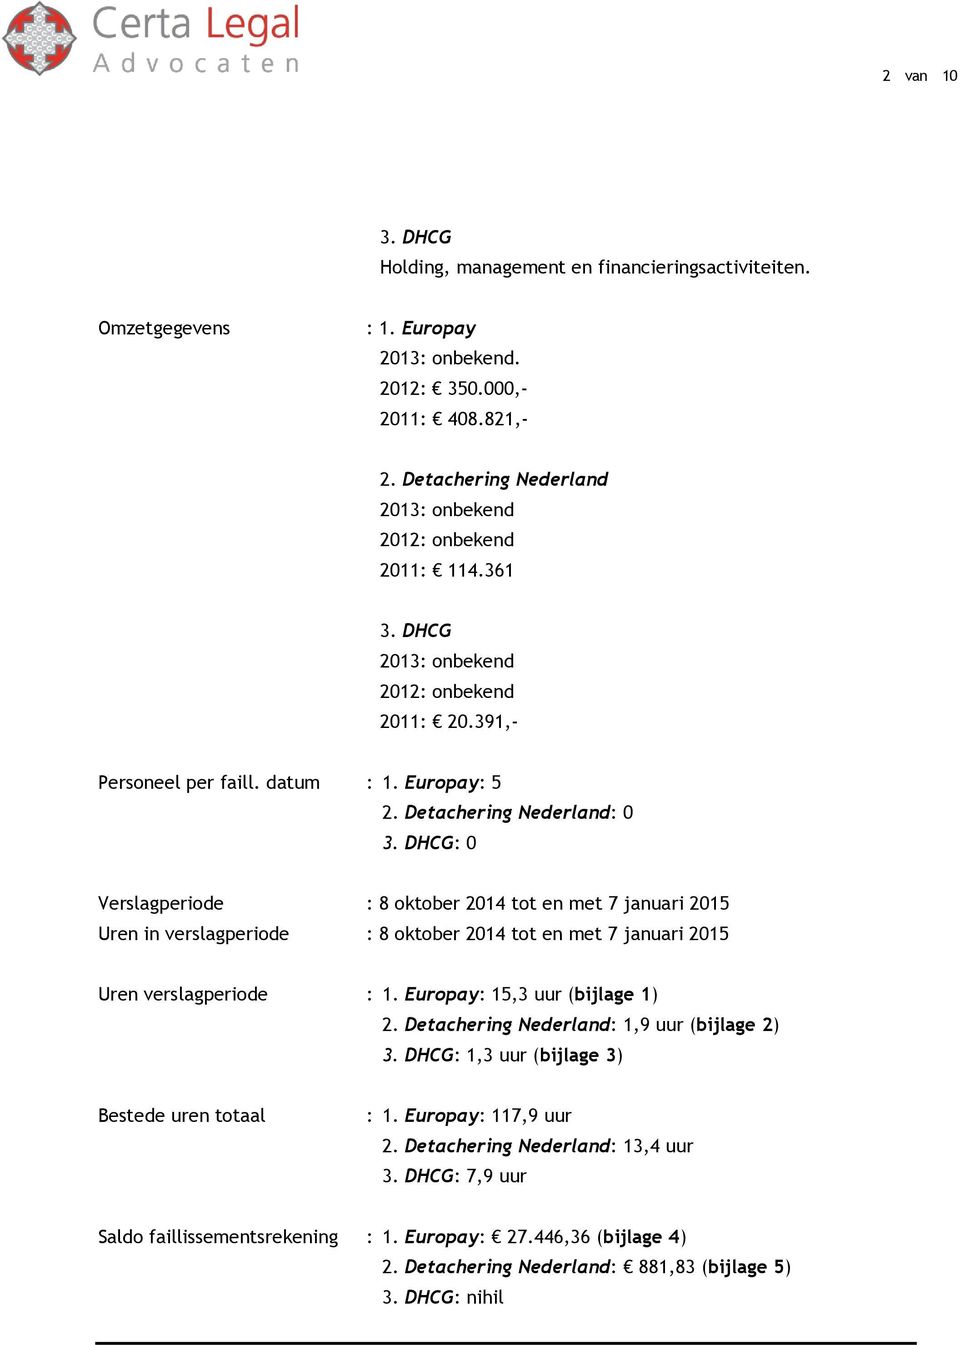 DHCG: 0 Verslagperiode : 8 oktober 2014 tot en met 7 januari 2015 Uren in verslagperiode : 8 oktober 2014 tot en met 7 januari 2015 Uren verslagperiode : 1. Europay: 15,3 uur (bijlage 1) 2.